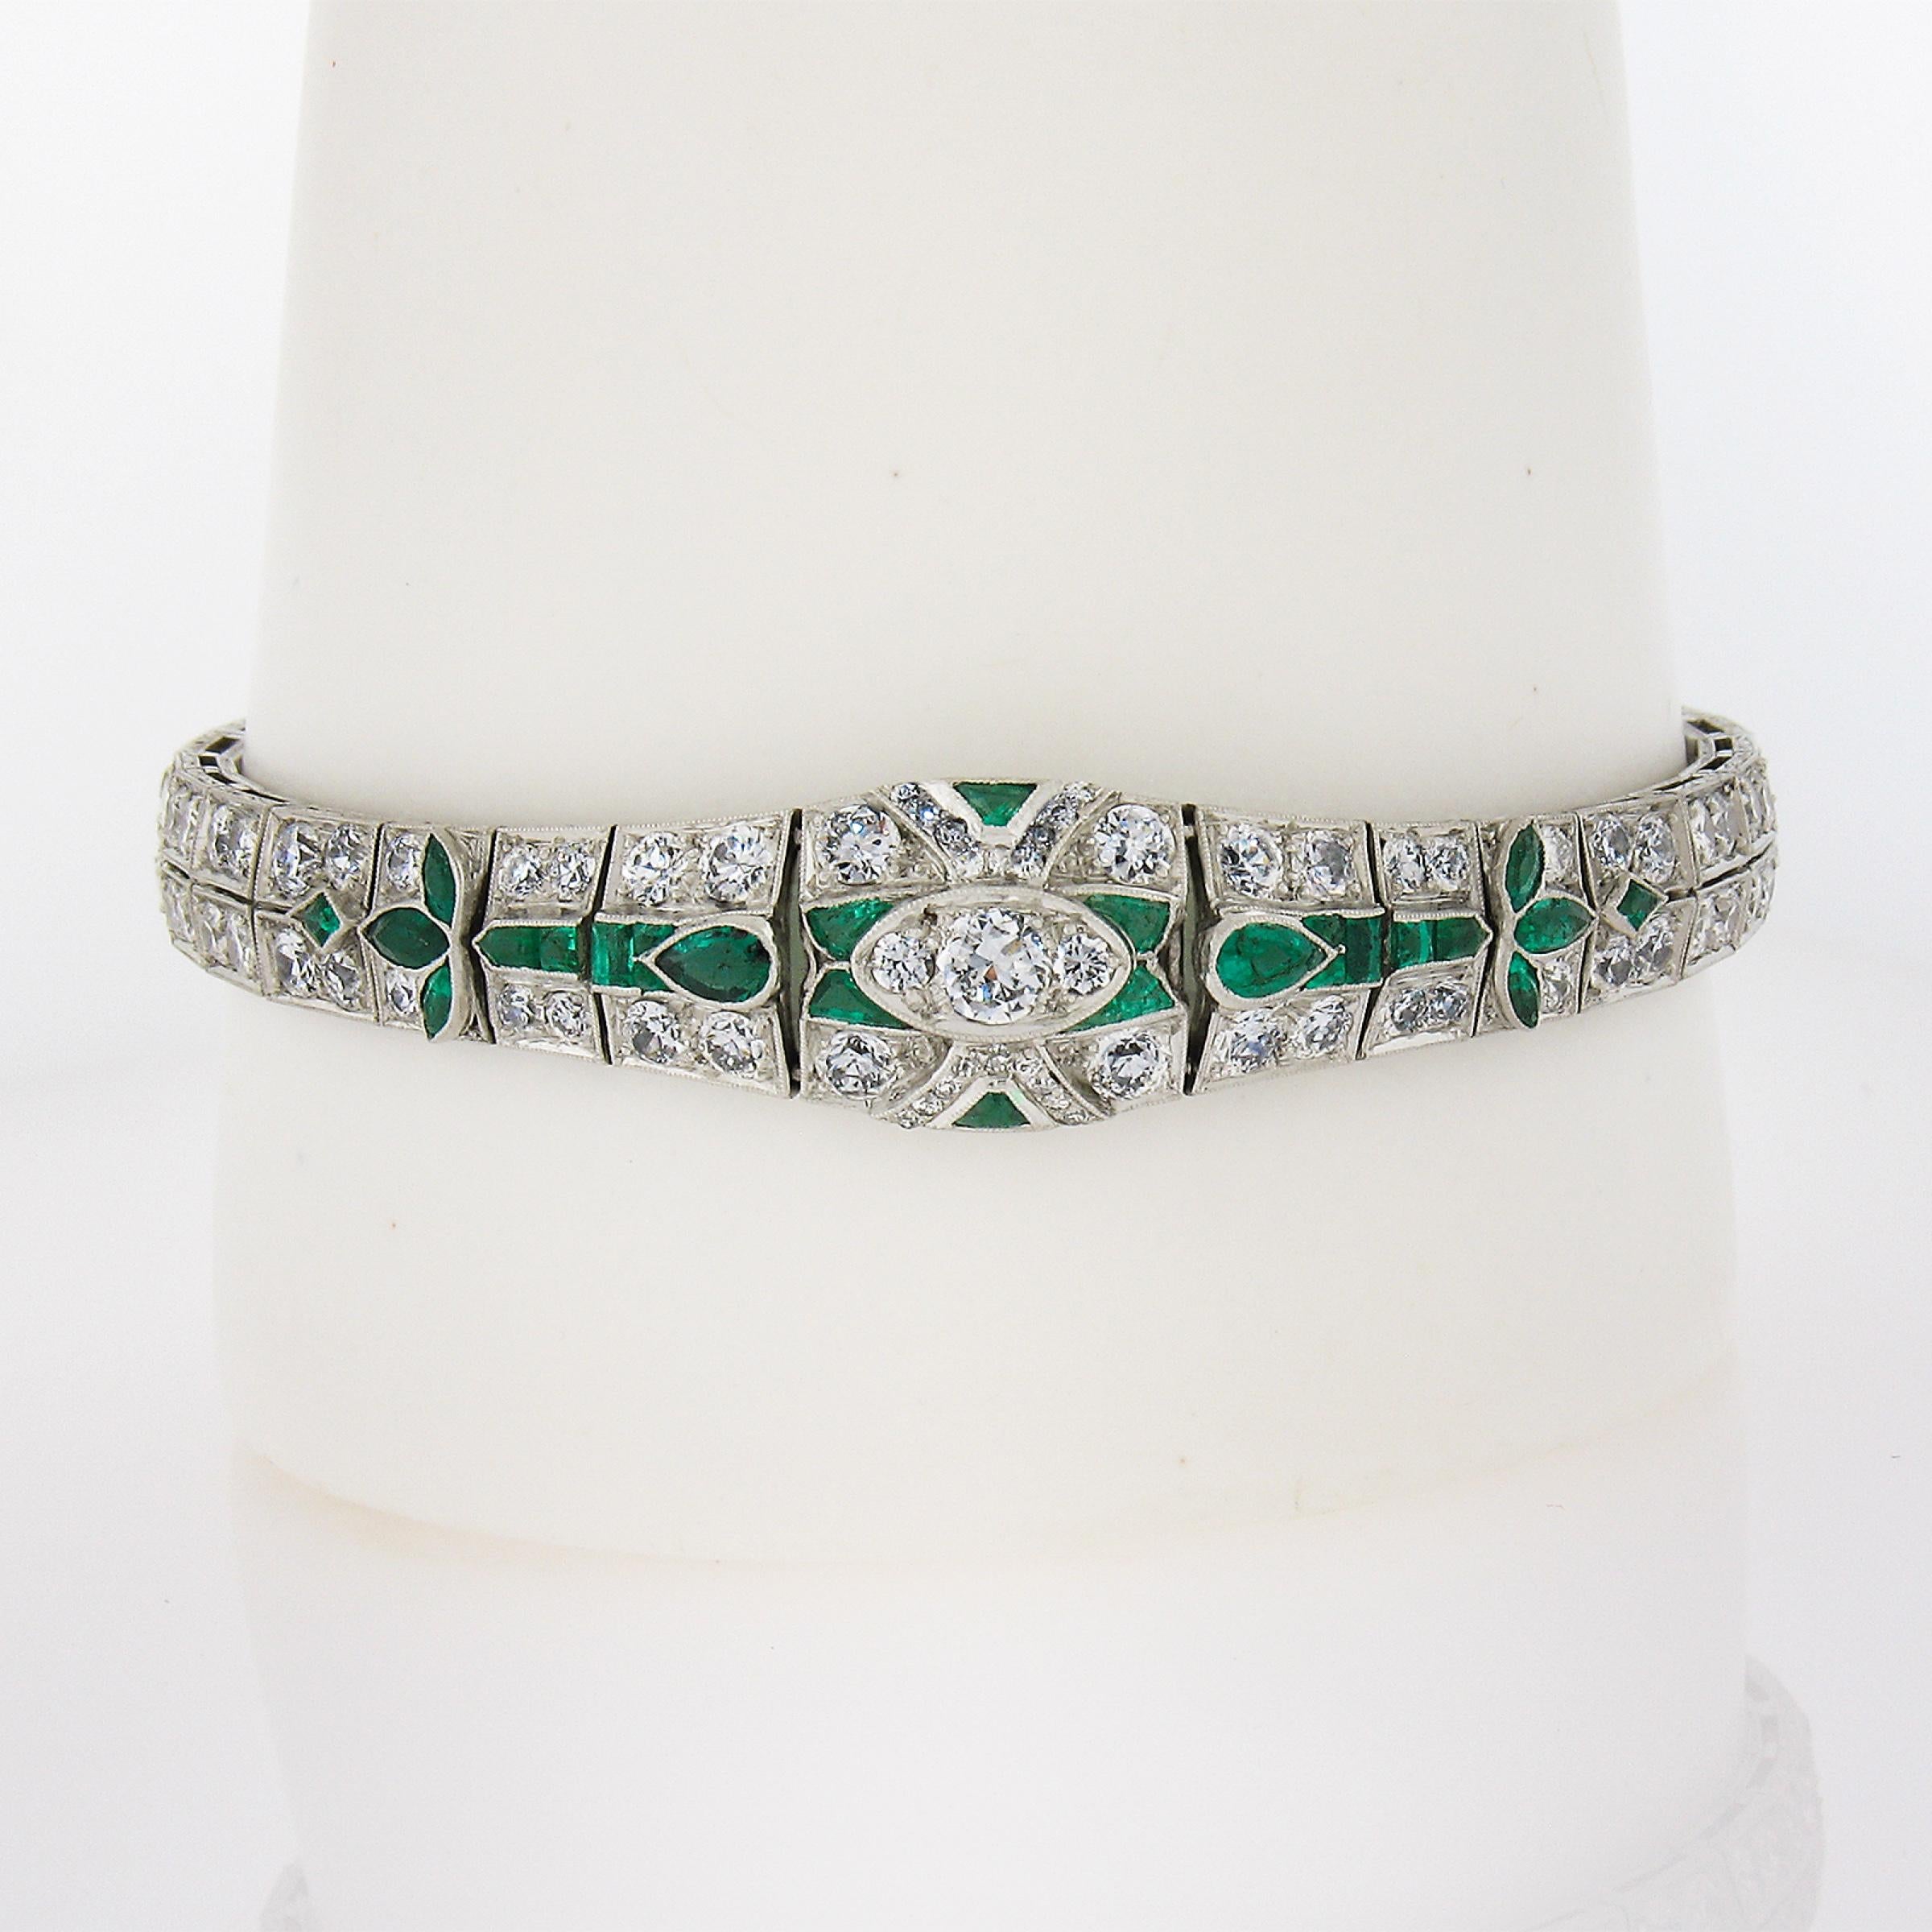 Dieses unglaubliche antike Armband aus der Zeit des Art déco zeichnet sich durch leicht abgestufte, rechteckige Glieder aus, die durchgängig elegant mit alten europäischen Diamanten im Pave-Set besetzt sind. Diese Diamanten mit altem Schliff sind